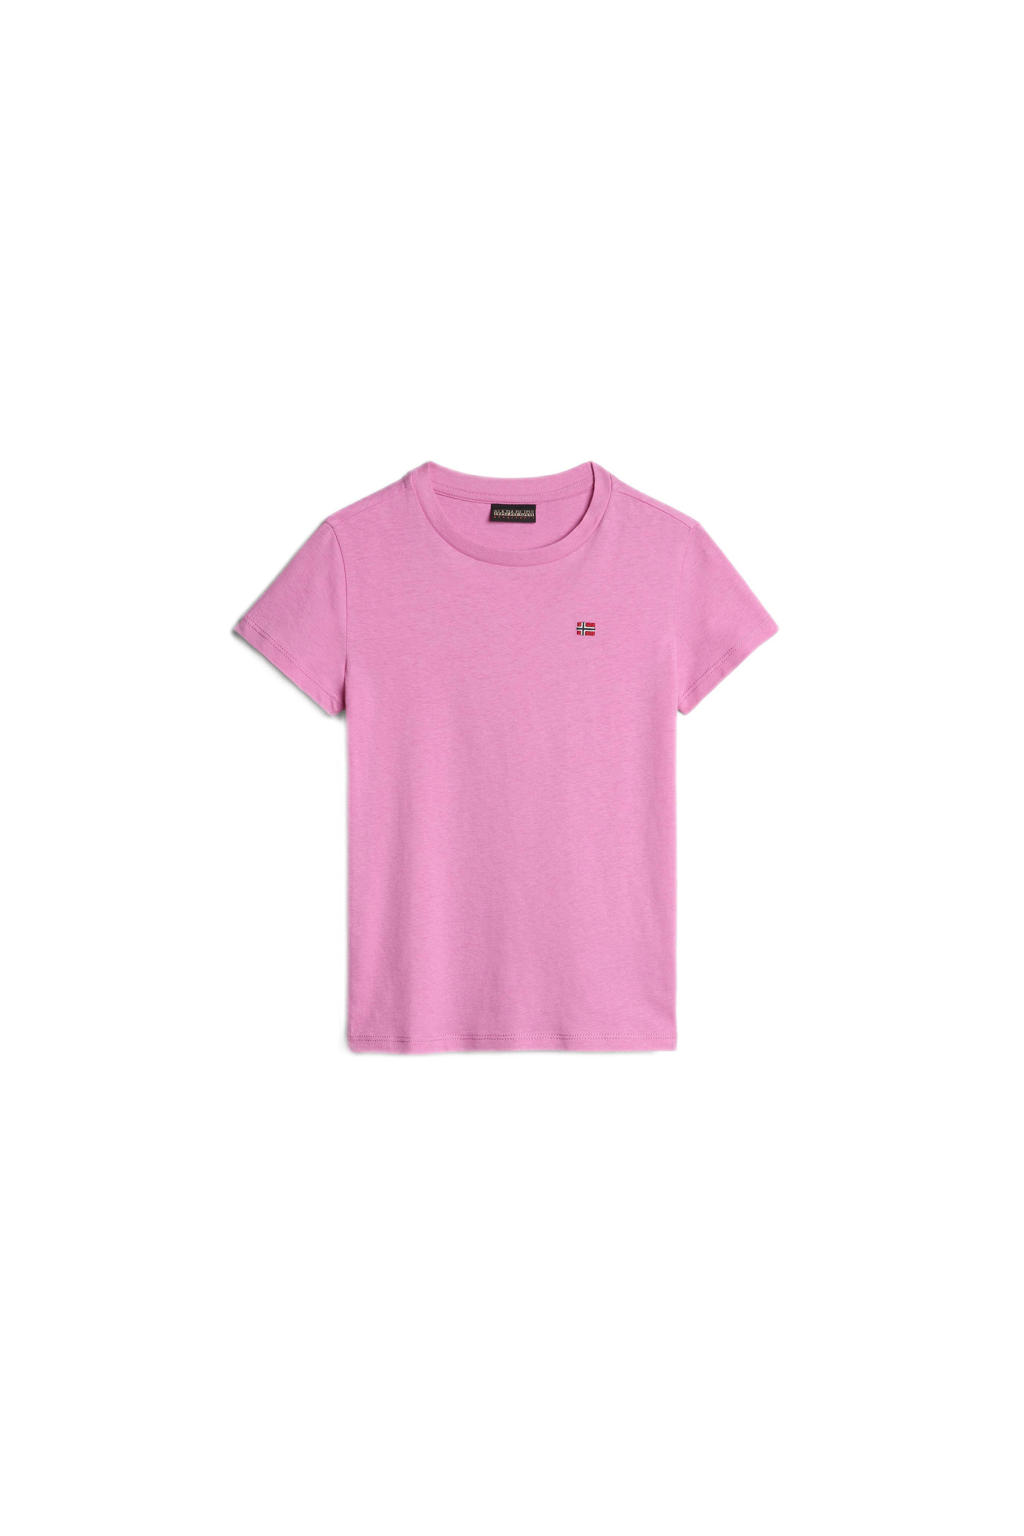 Roze jongens en meisjes Napapijri T-shirt van duurzaam katoen met korte mouwen en ronde hals